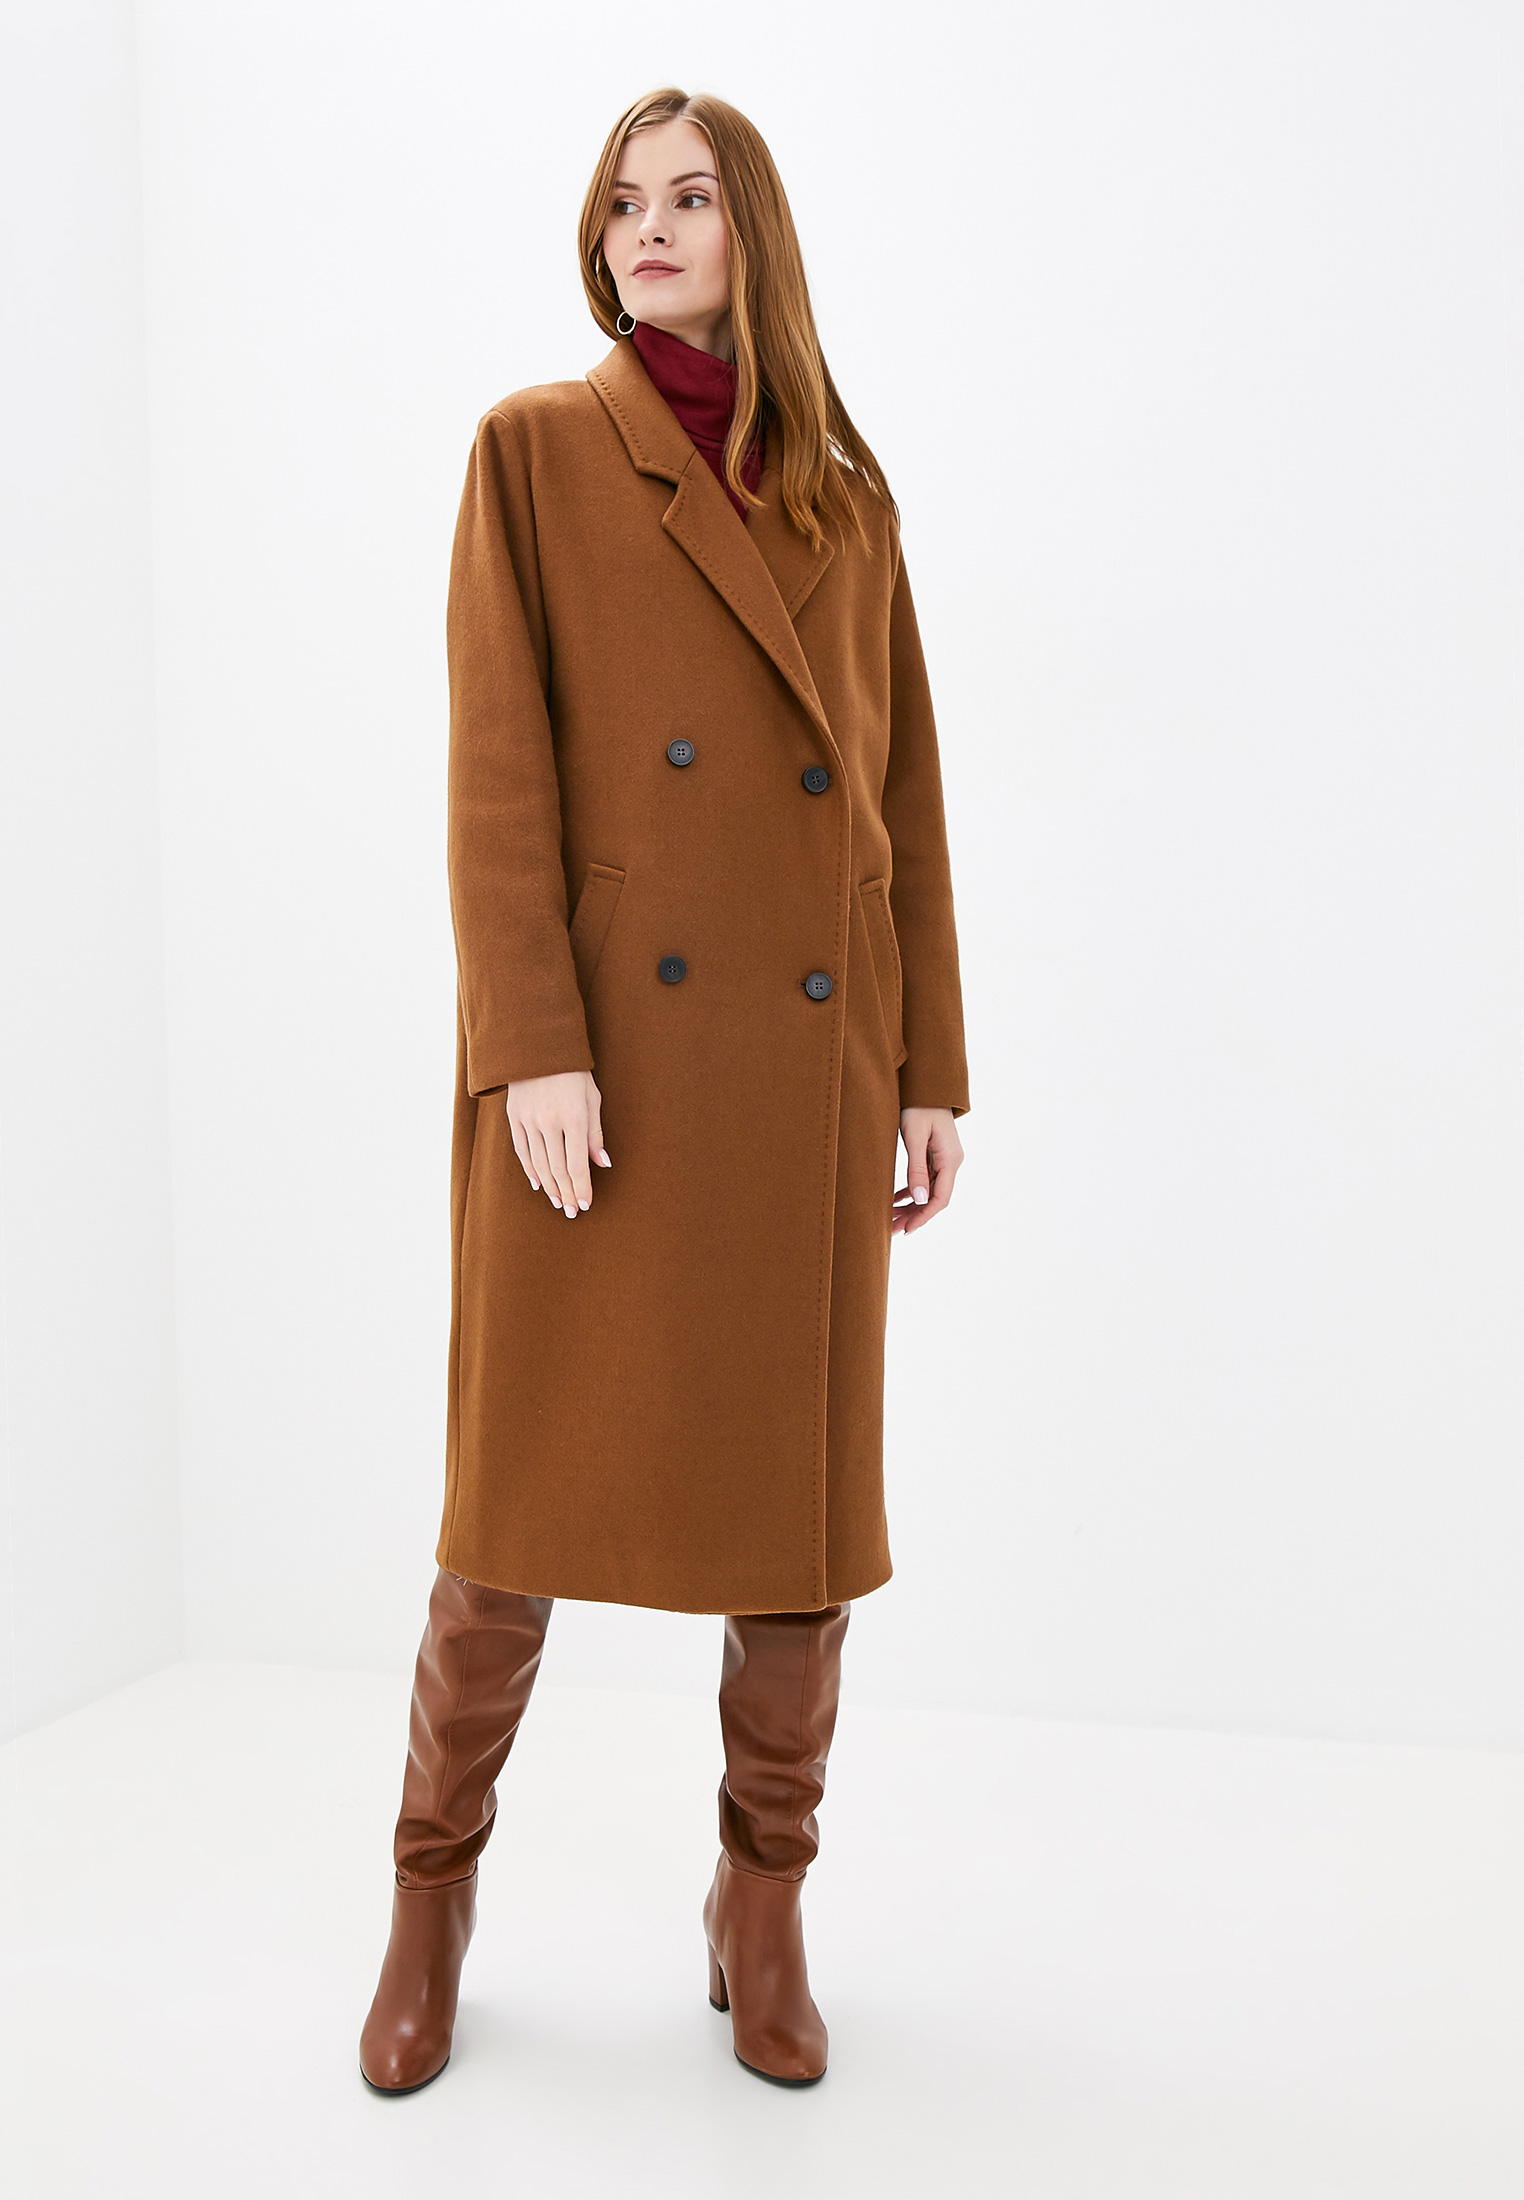 Купить коричневое пальто. Пальто коричневого цвета. Коричневое пальто женское. Коричневое пальто. Пальто коричневое двубортное.